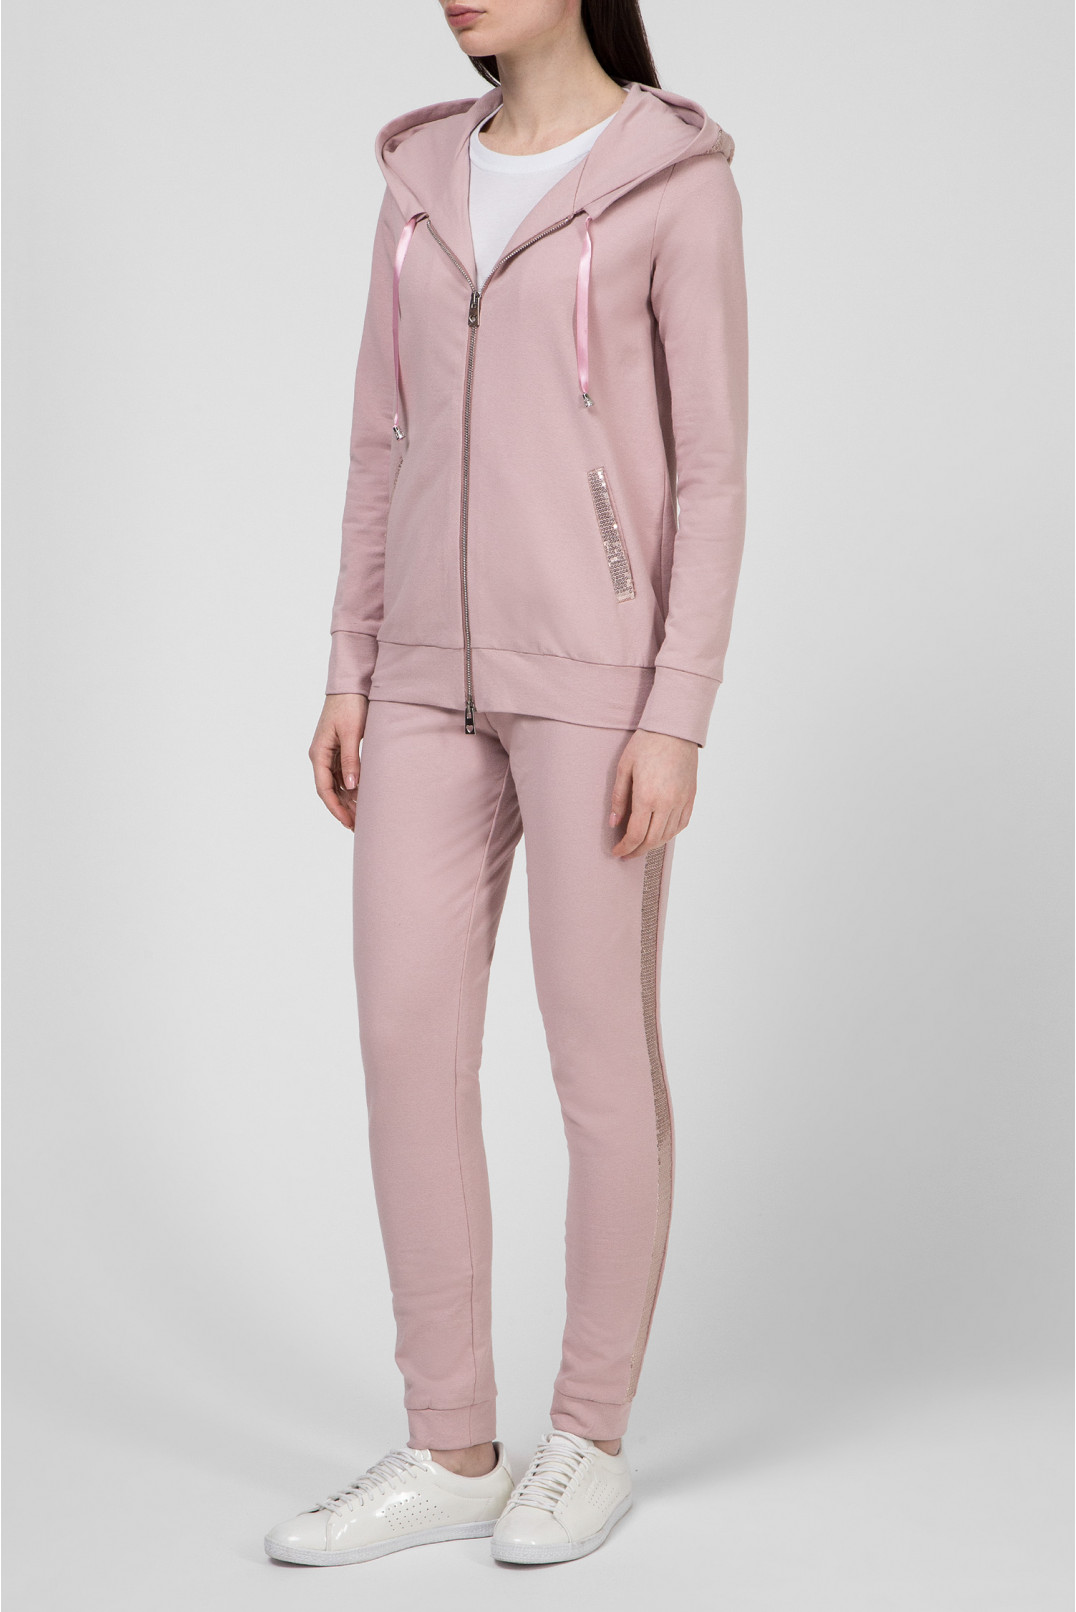 Женский розовый спортивный костюм (кофта, брюки) 1